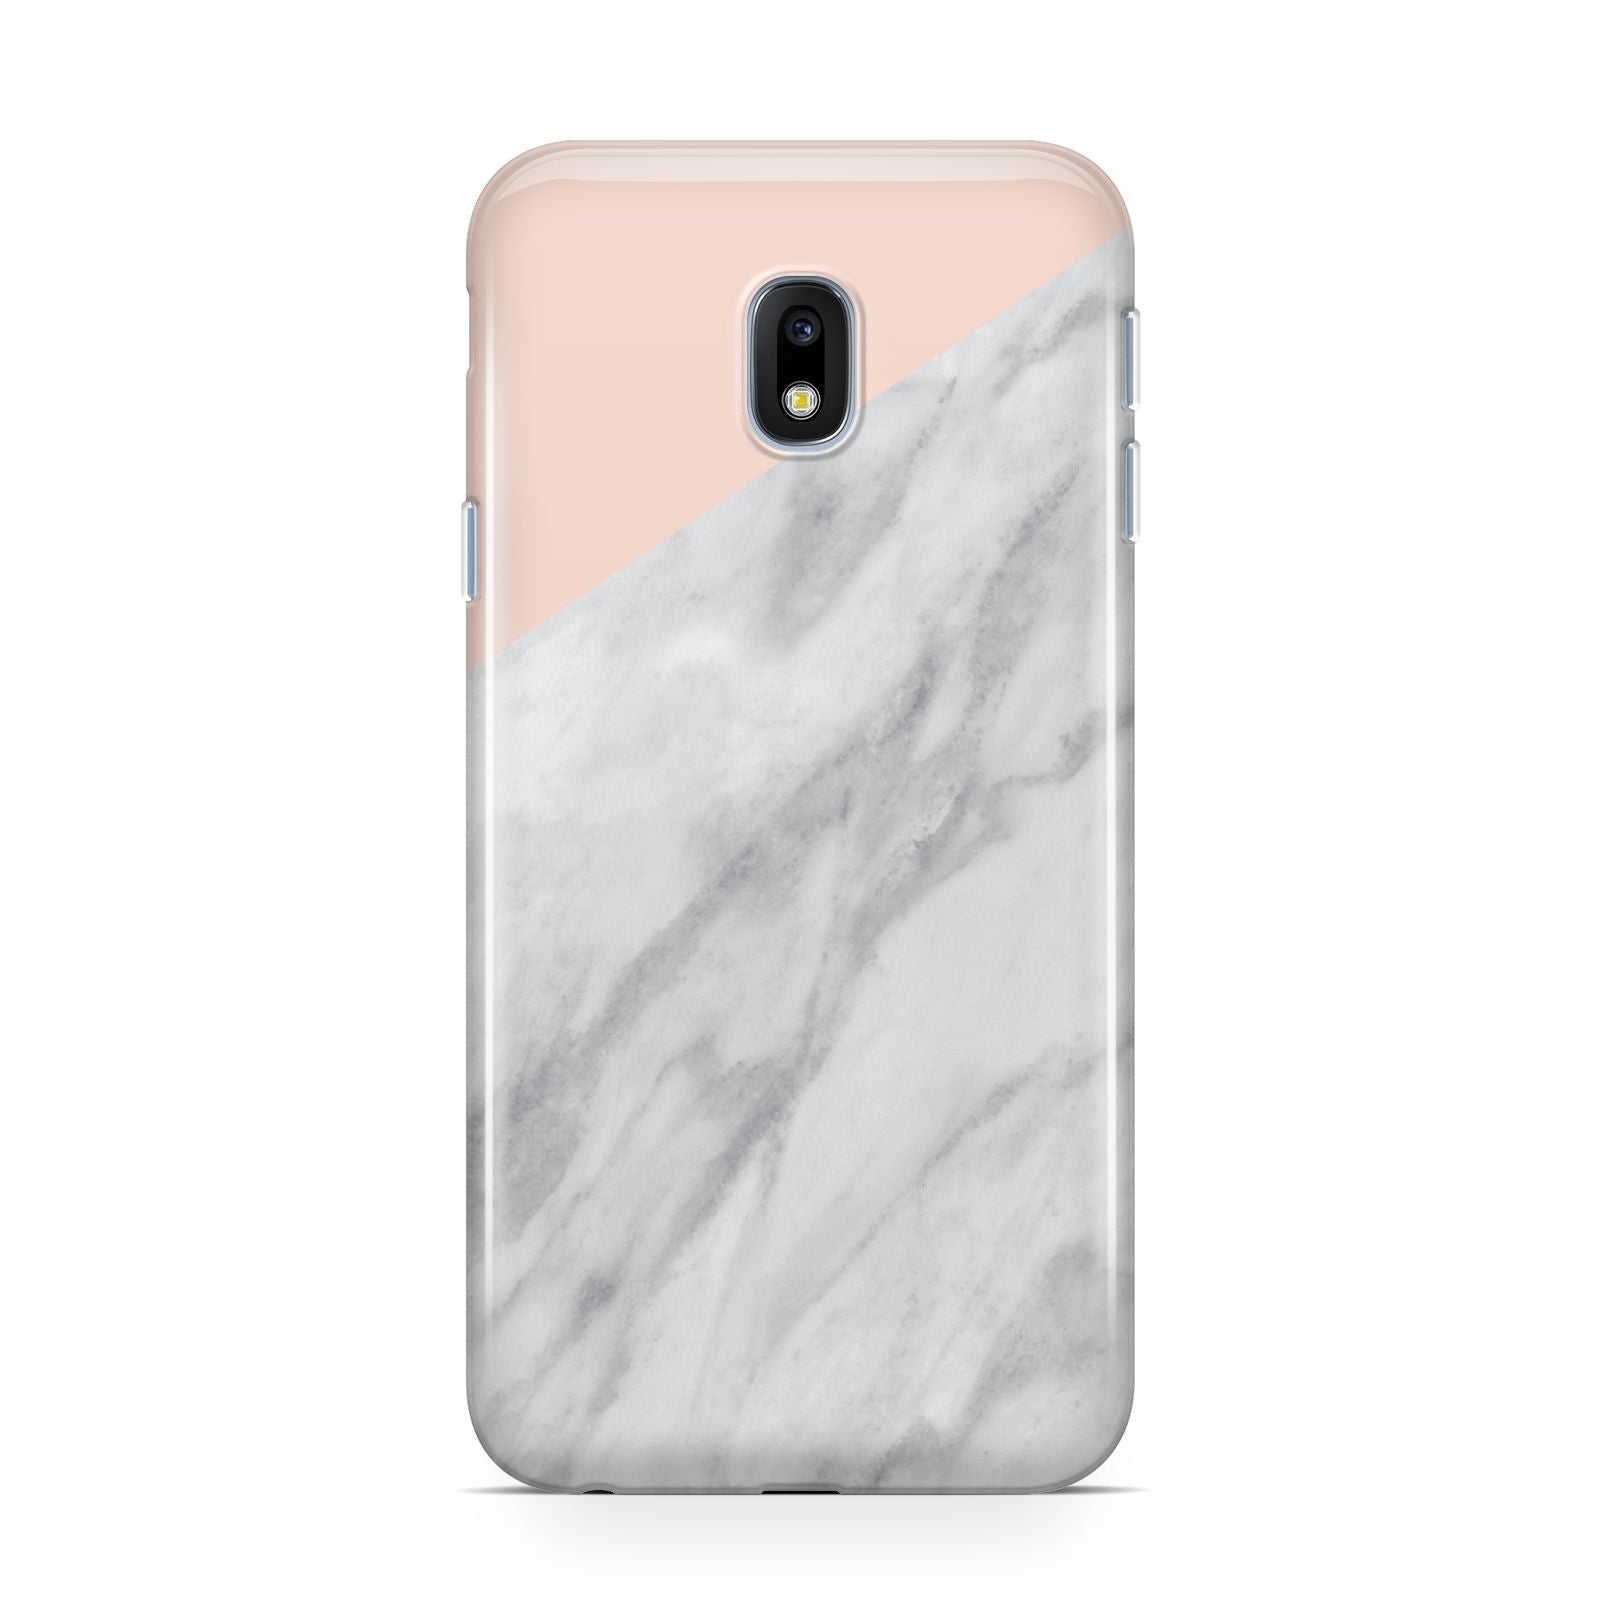 Marble Pink White Grey Samsung Galaxy J3 2017 Case